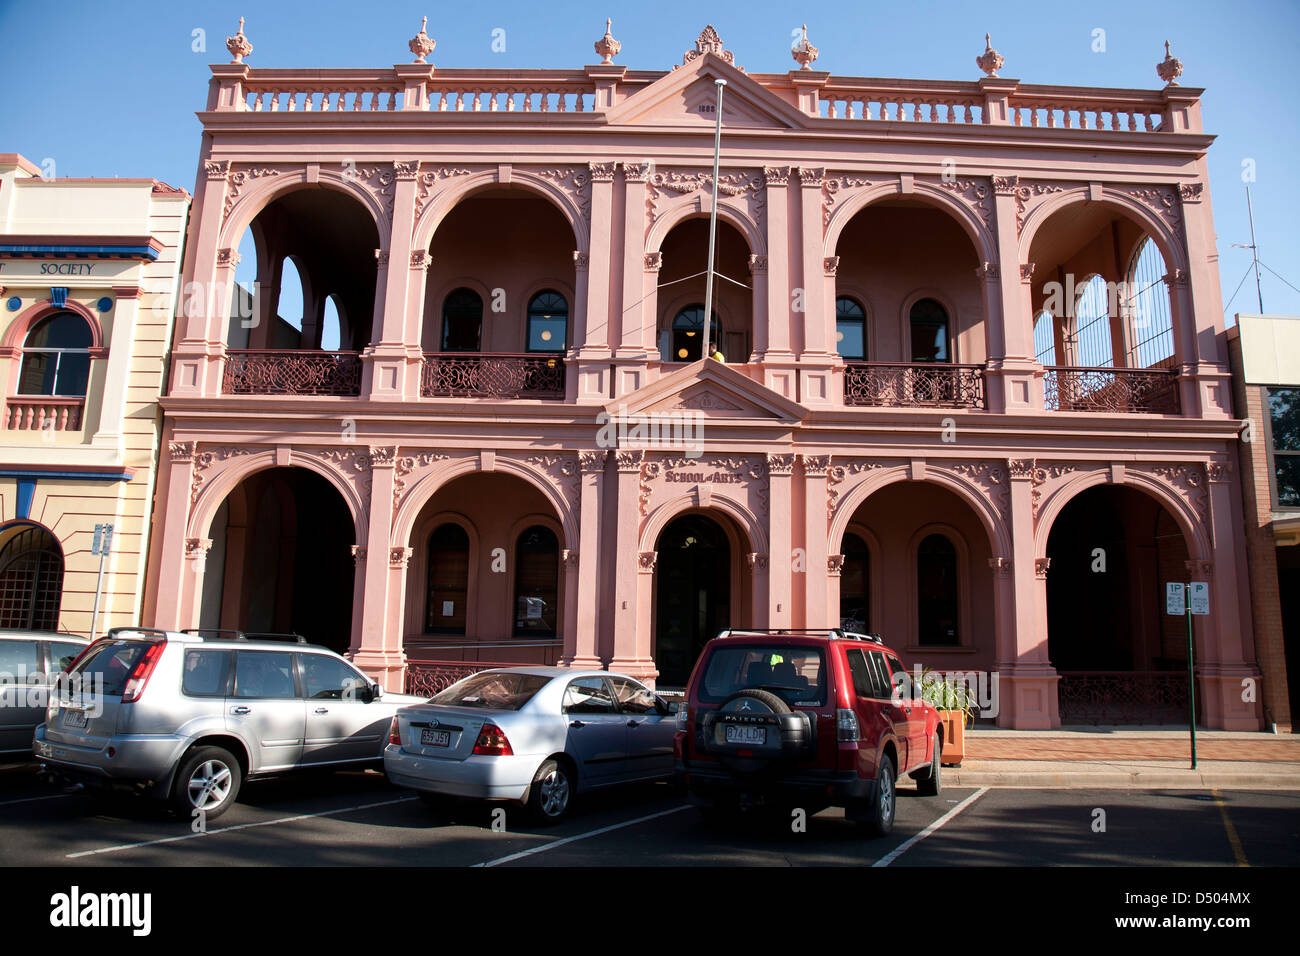 La Escuela de Artes edificio construido en 1889 uno de los muchos edificios históricos a lo largo de Bourbong Street Bundaberg Queensland Australia Foto de stock